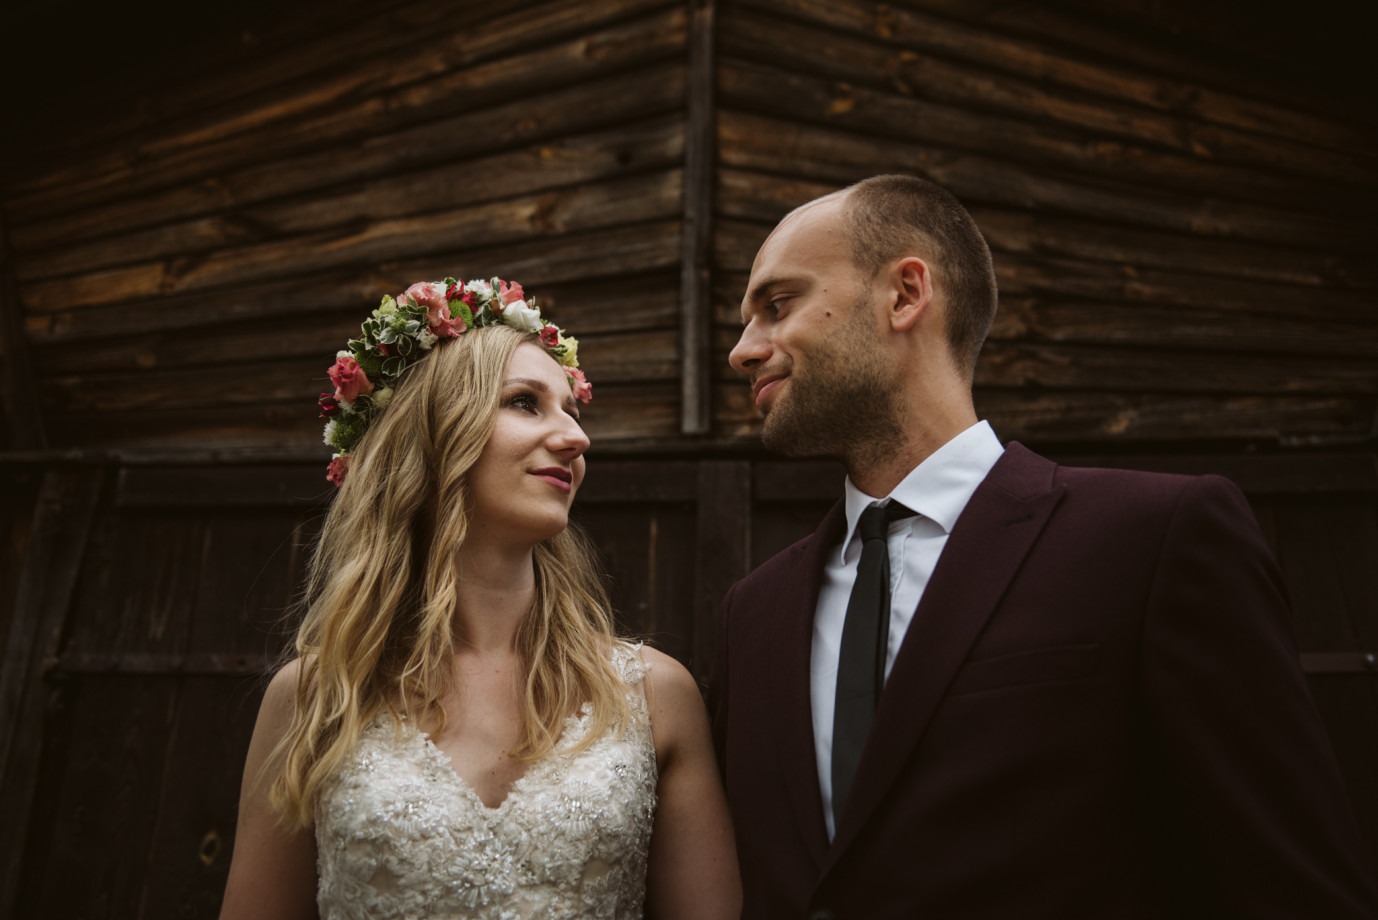 fotograf gdansk mariusz-tomzynski portfolio zdjecia slubne inspiracje wesele plener slubny sesja slubna